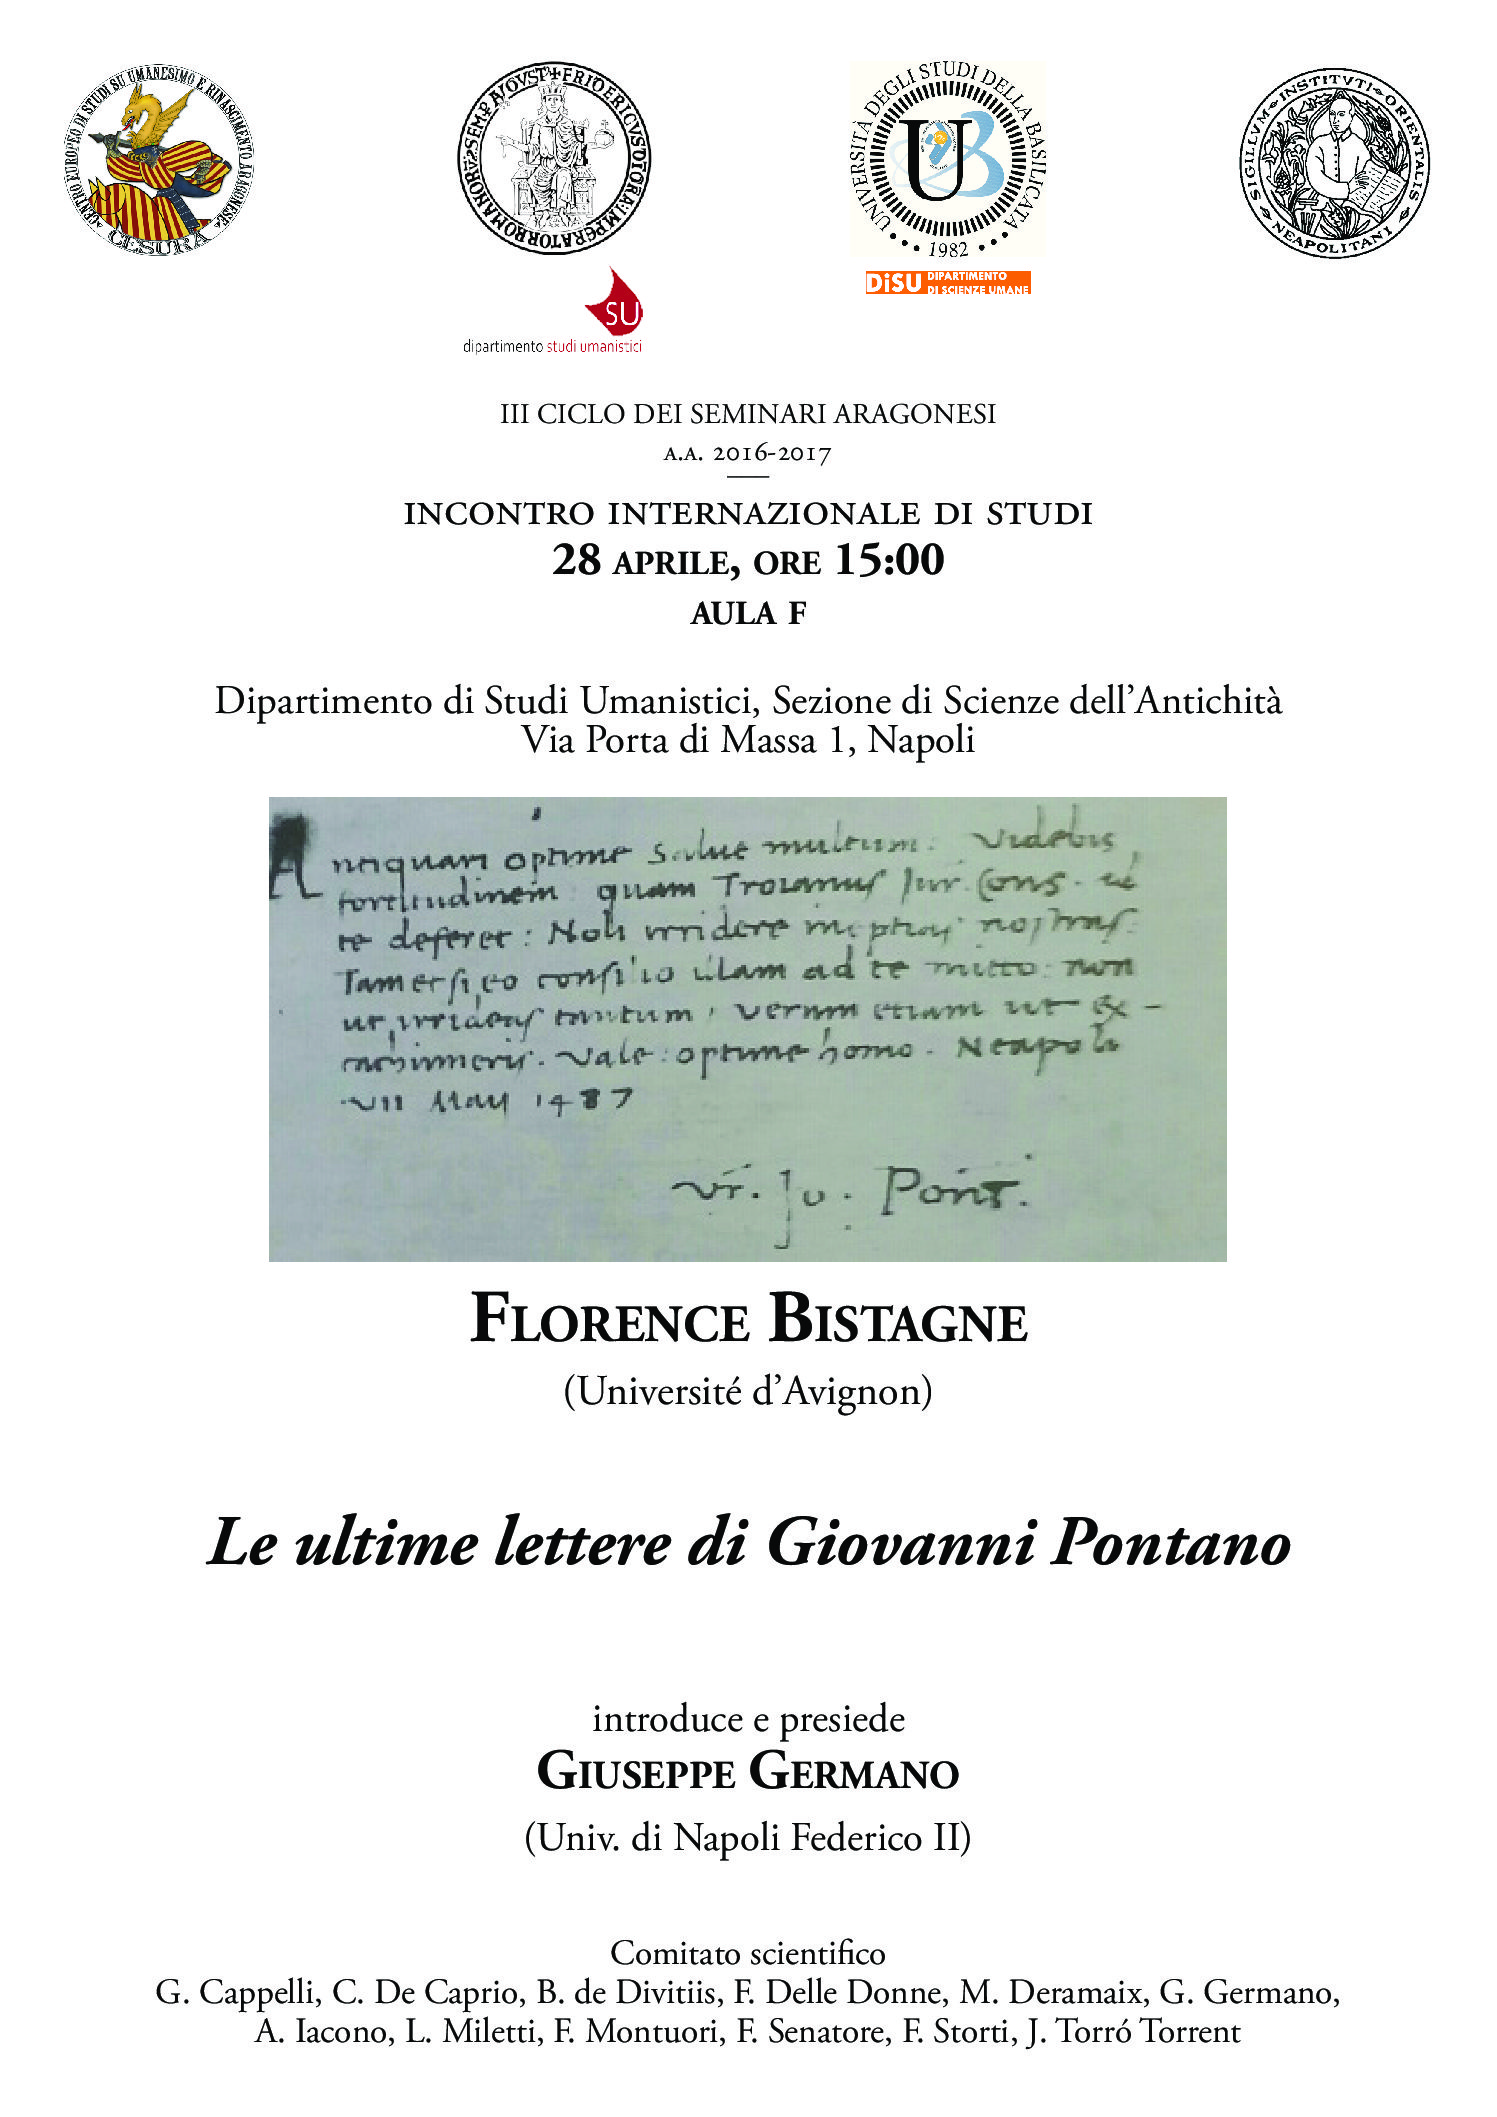 Seminario - Conference: Florence Bistagne (Université d’Avignon), Le ultime lettere di Giovanni Pontano